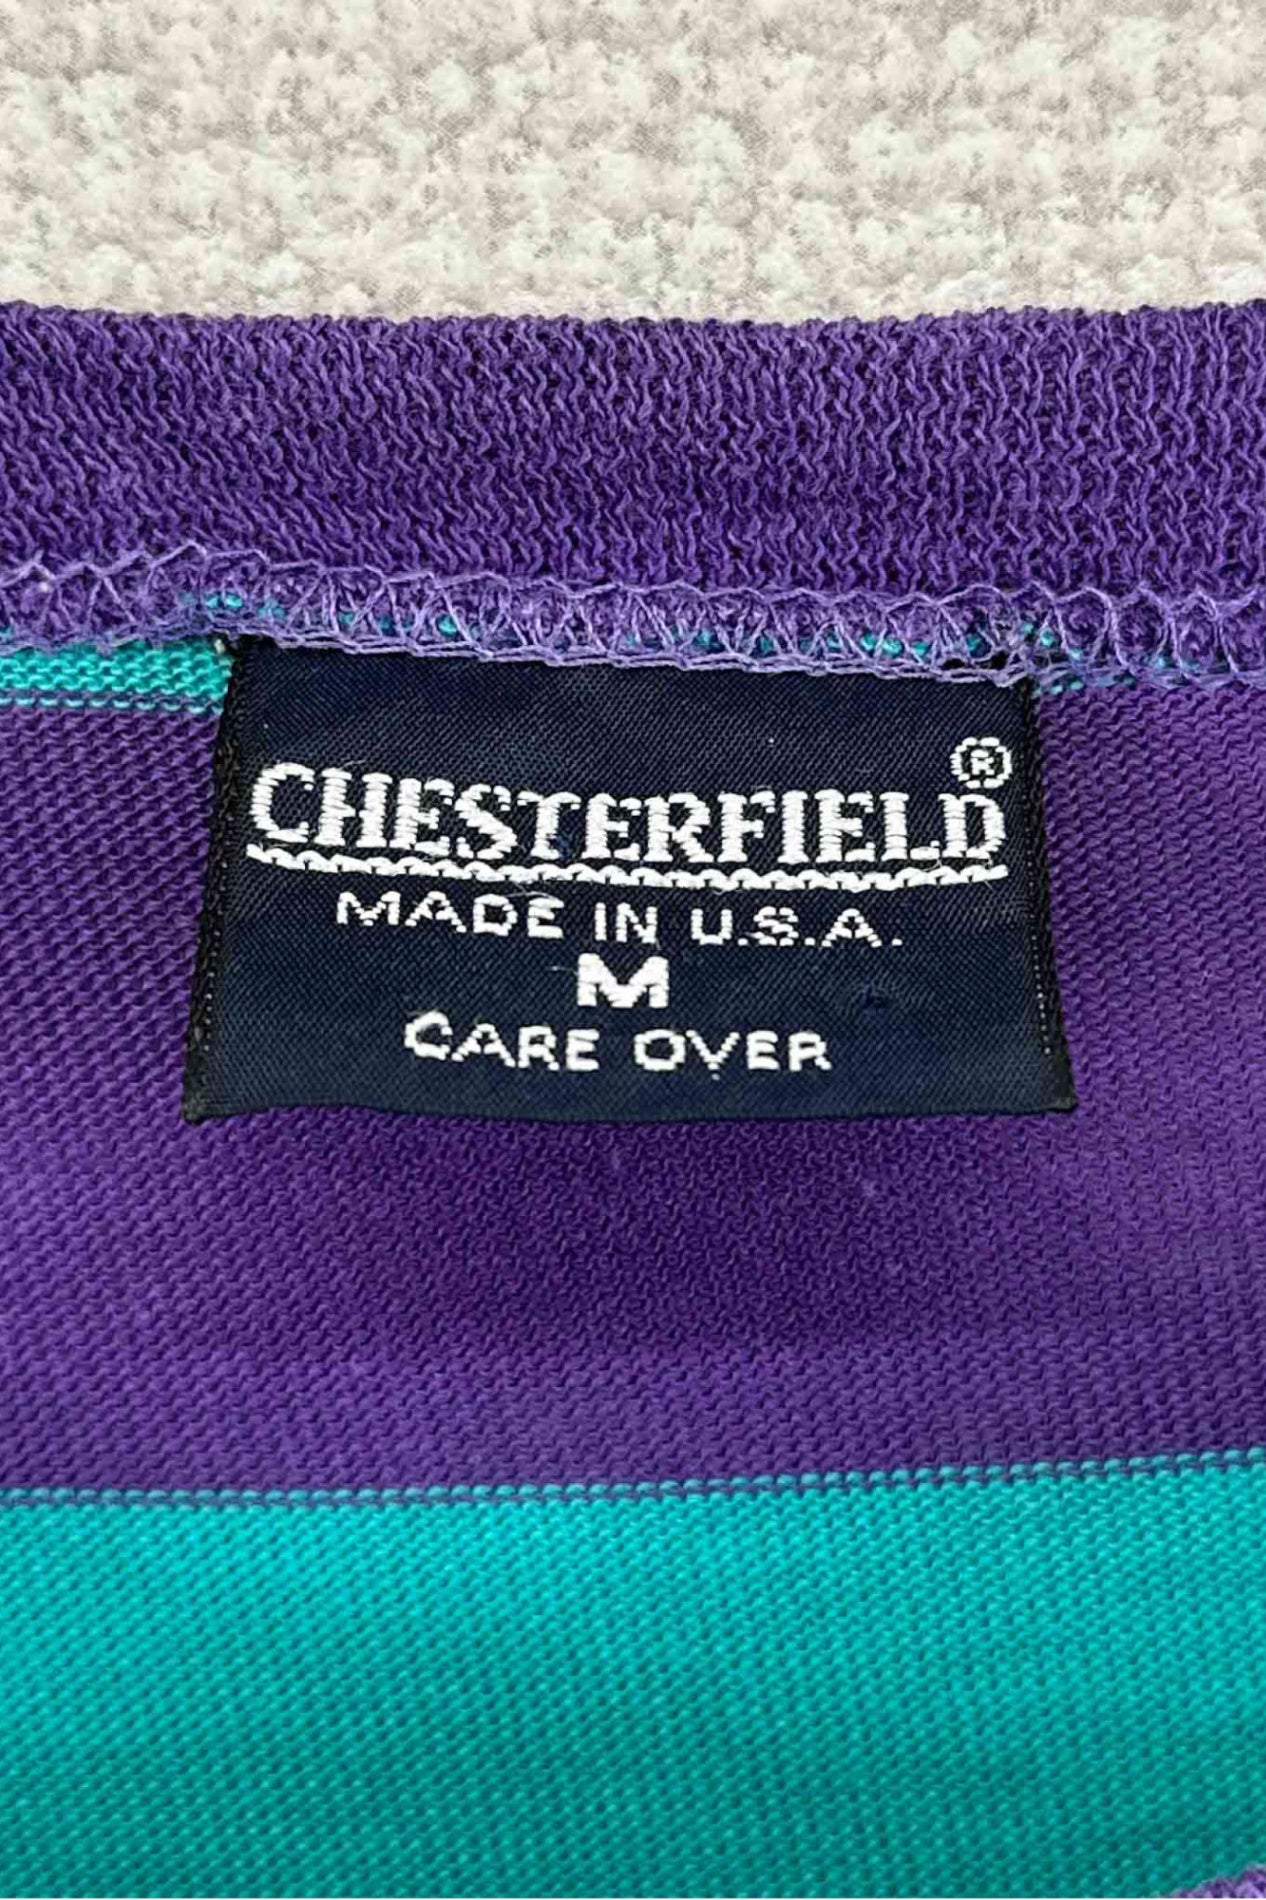 美国制造 CHESTERFIELD 镶边 T 恤